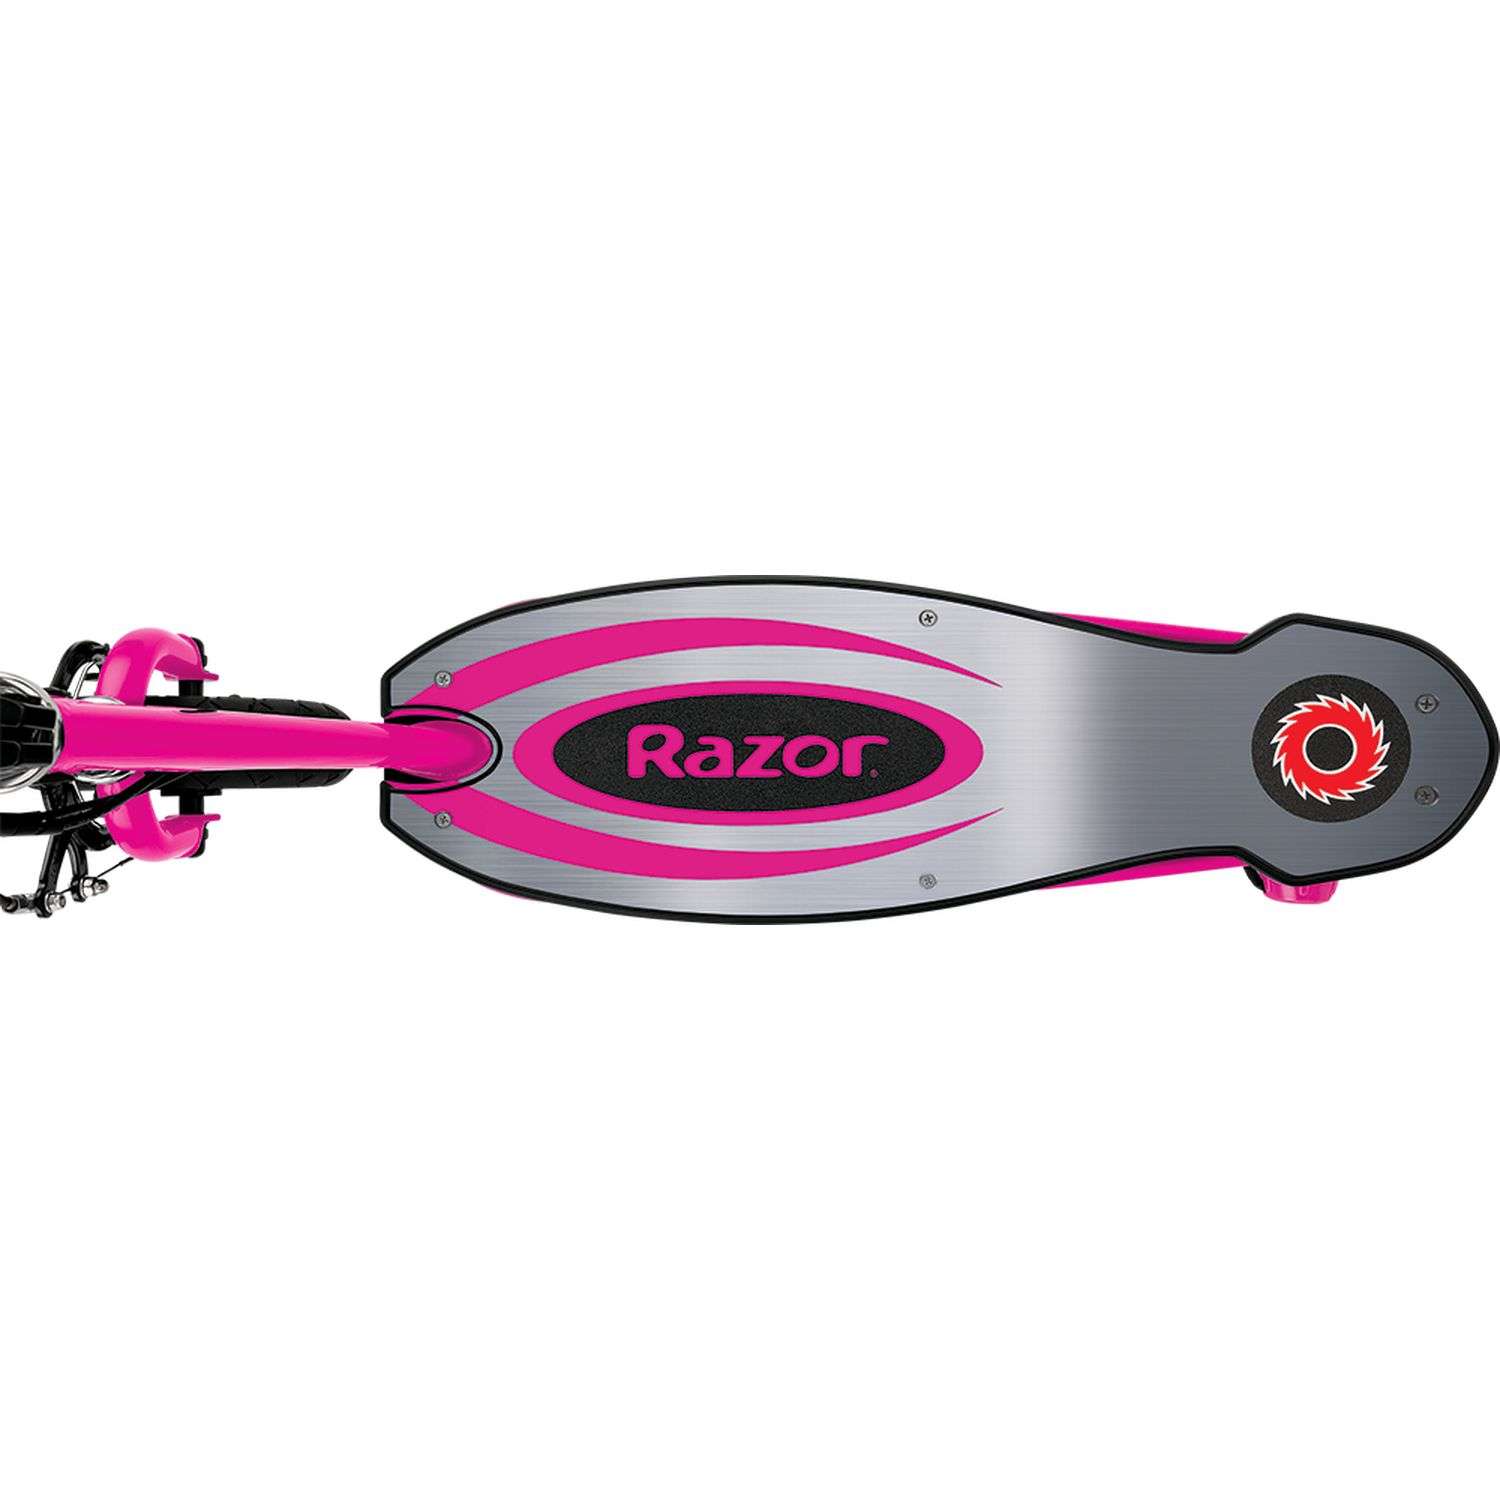 Электросамокат для детей RAZOR Power Core E100 Aluminium Deck розовый детский электрический с металлической декой - фото 8